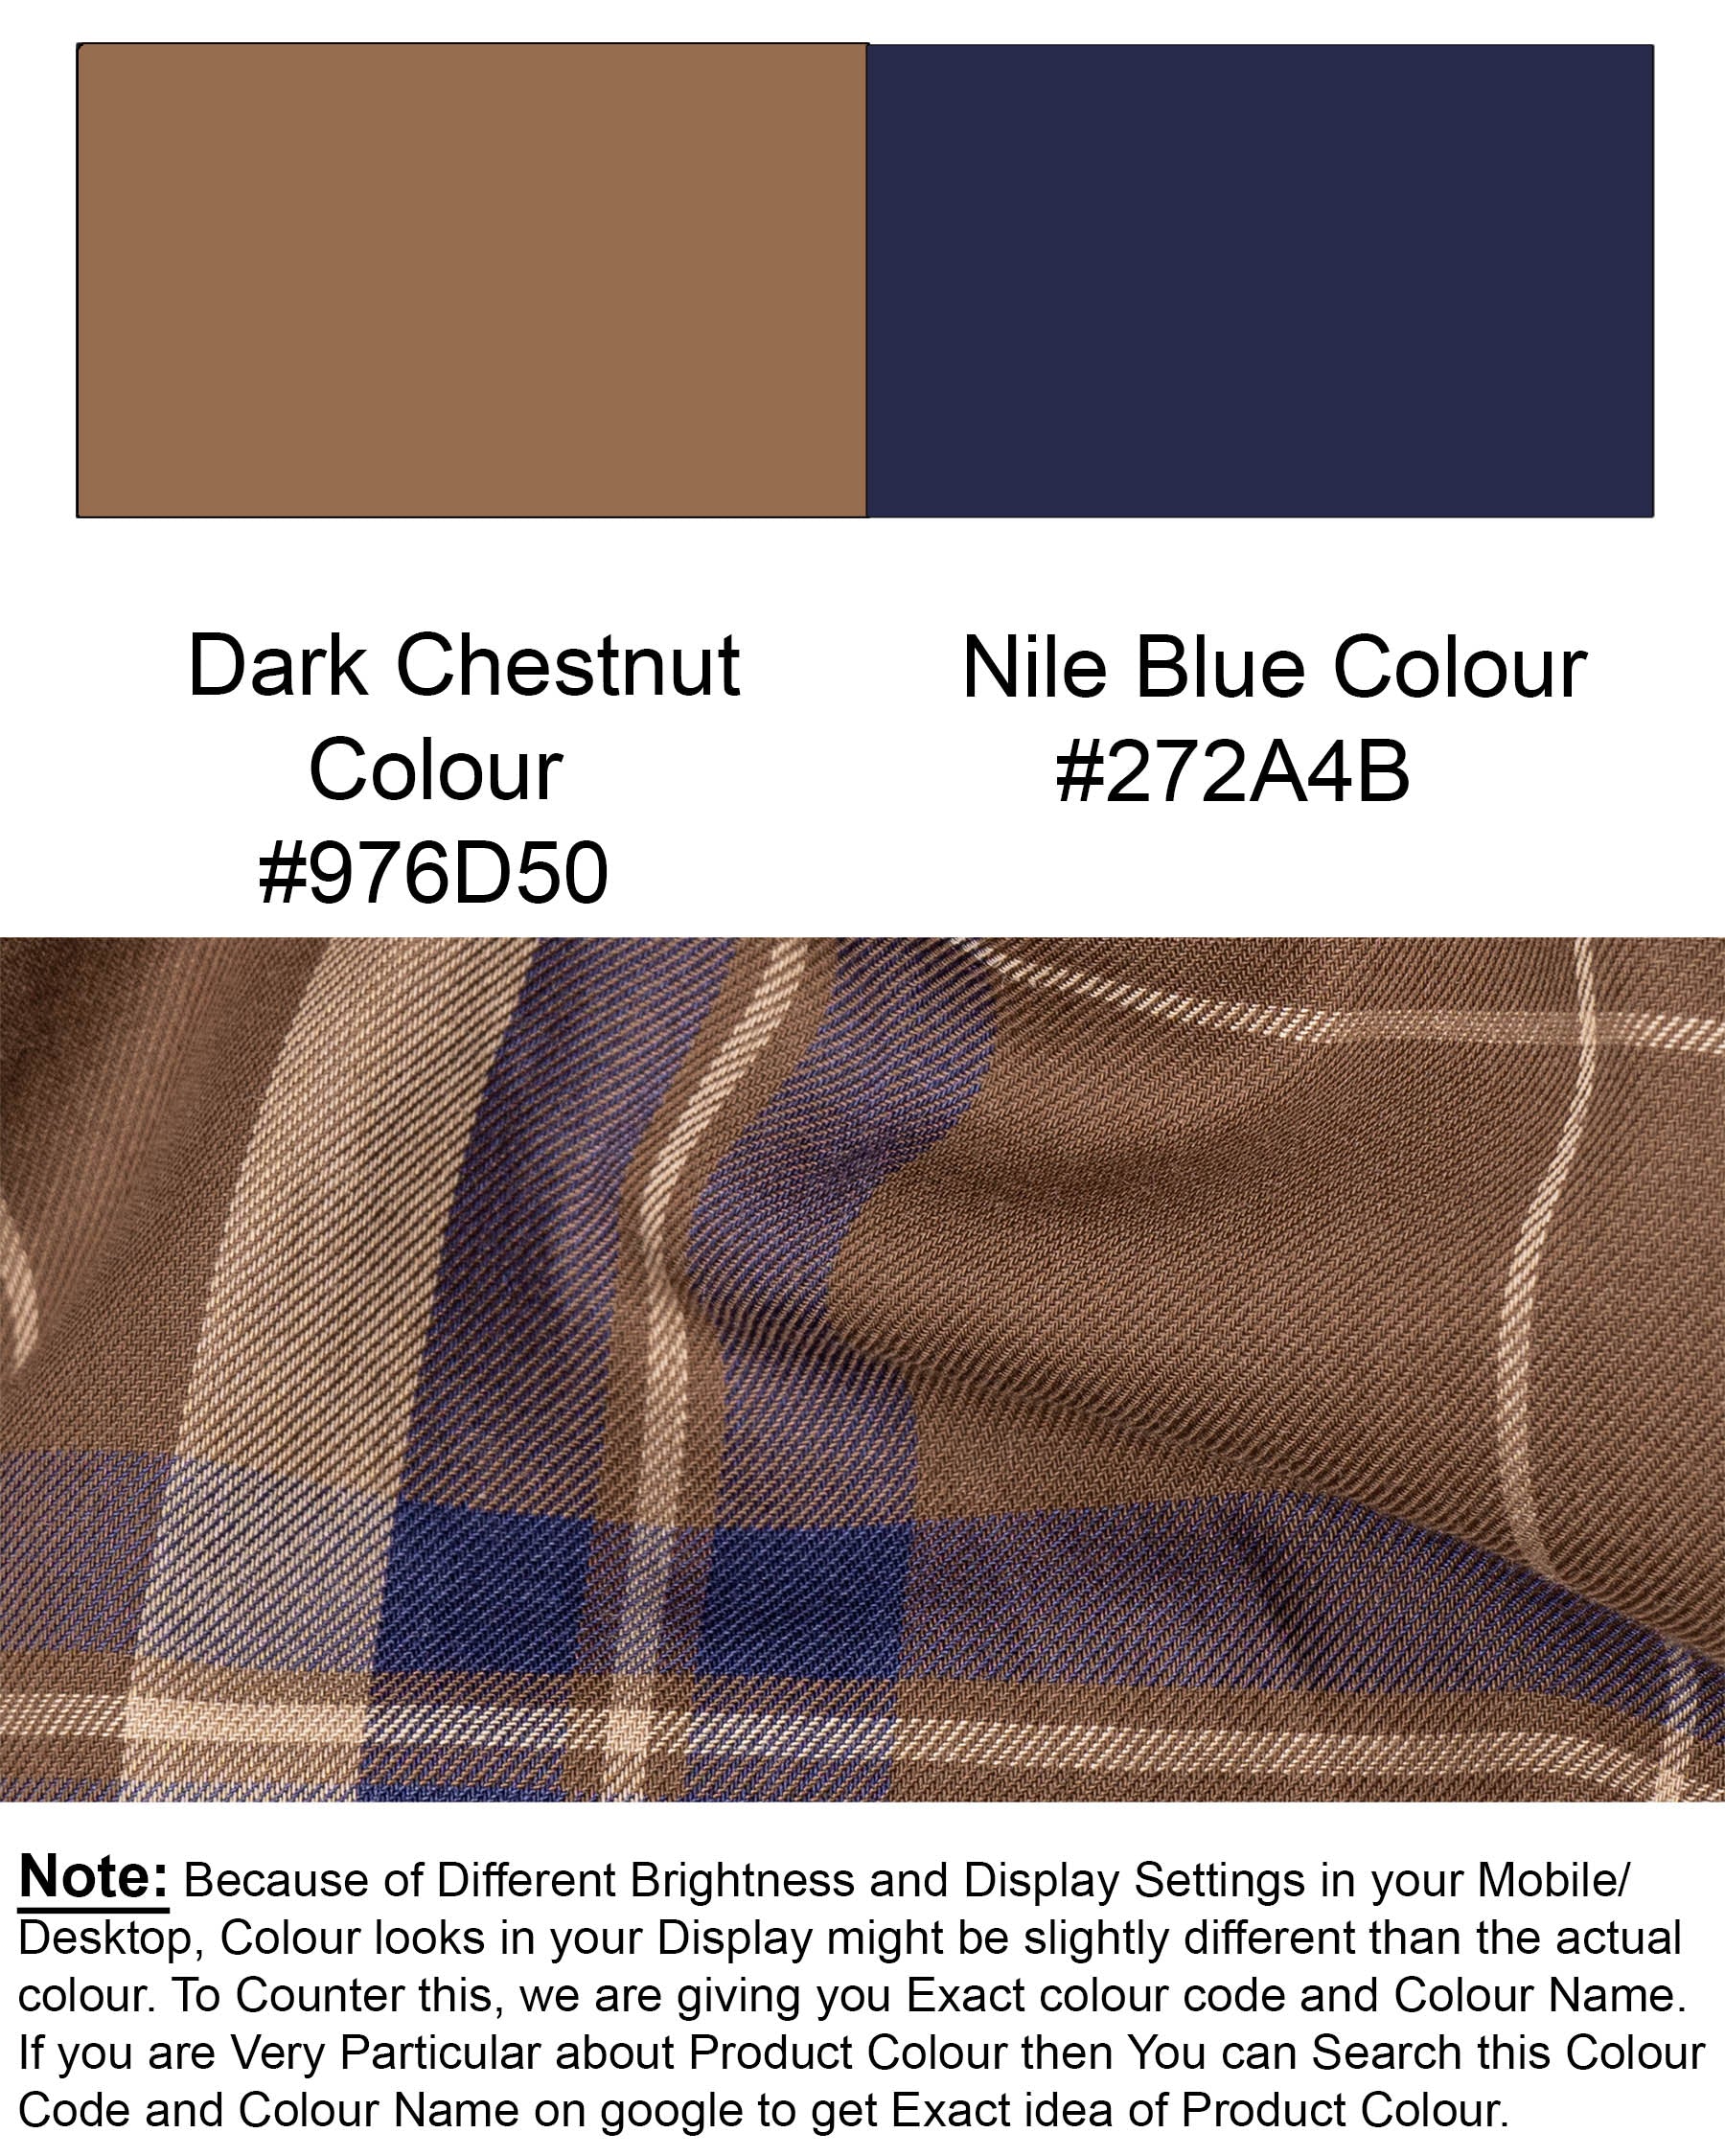 Dark Chestnut Brown Twill Plaid Premium Cotton Shirt 6360-BD-BLE-38,6360-BD-BLE-H-38,6360-BD-BLE-39,6360-BD-BLE-H-39,6360-BD-BLE-40,6360-BD-BLE-H-40,6360-BD-BLE-42,6360-BD-BLE-H-42,6360-BD-BLE-44,6360-BD-BLE-H-44,6360-BD-BLE-46,6360-BD-BLE-H-46,6360-BD-BLE-48,6360-BD-BLE-H-48,6360-BD-BLE-50,6360-BD-BLE-H-50,6360-BD-BLE-52,6360-BD-BLE-H-52